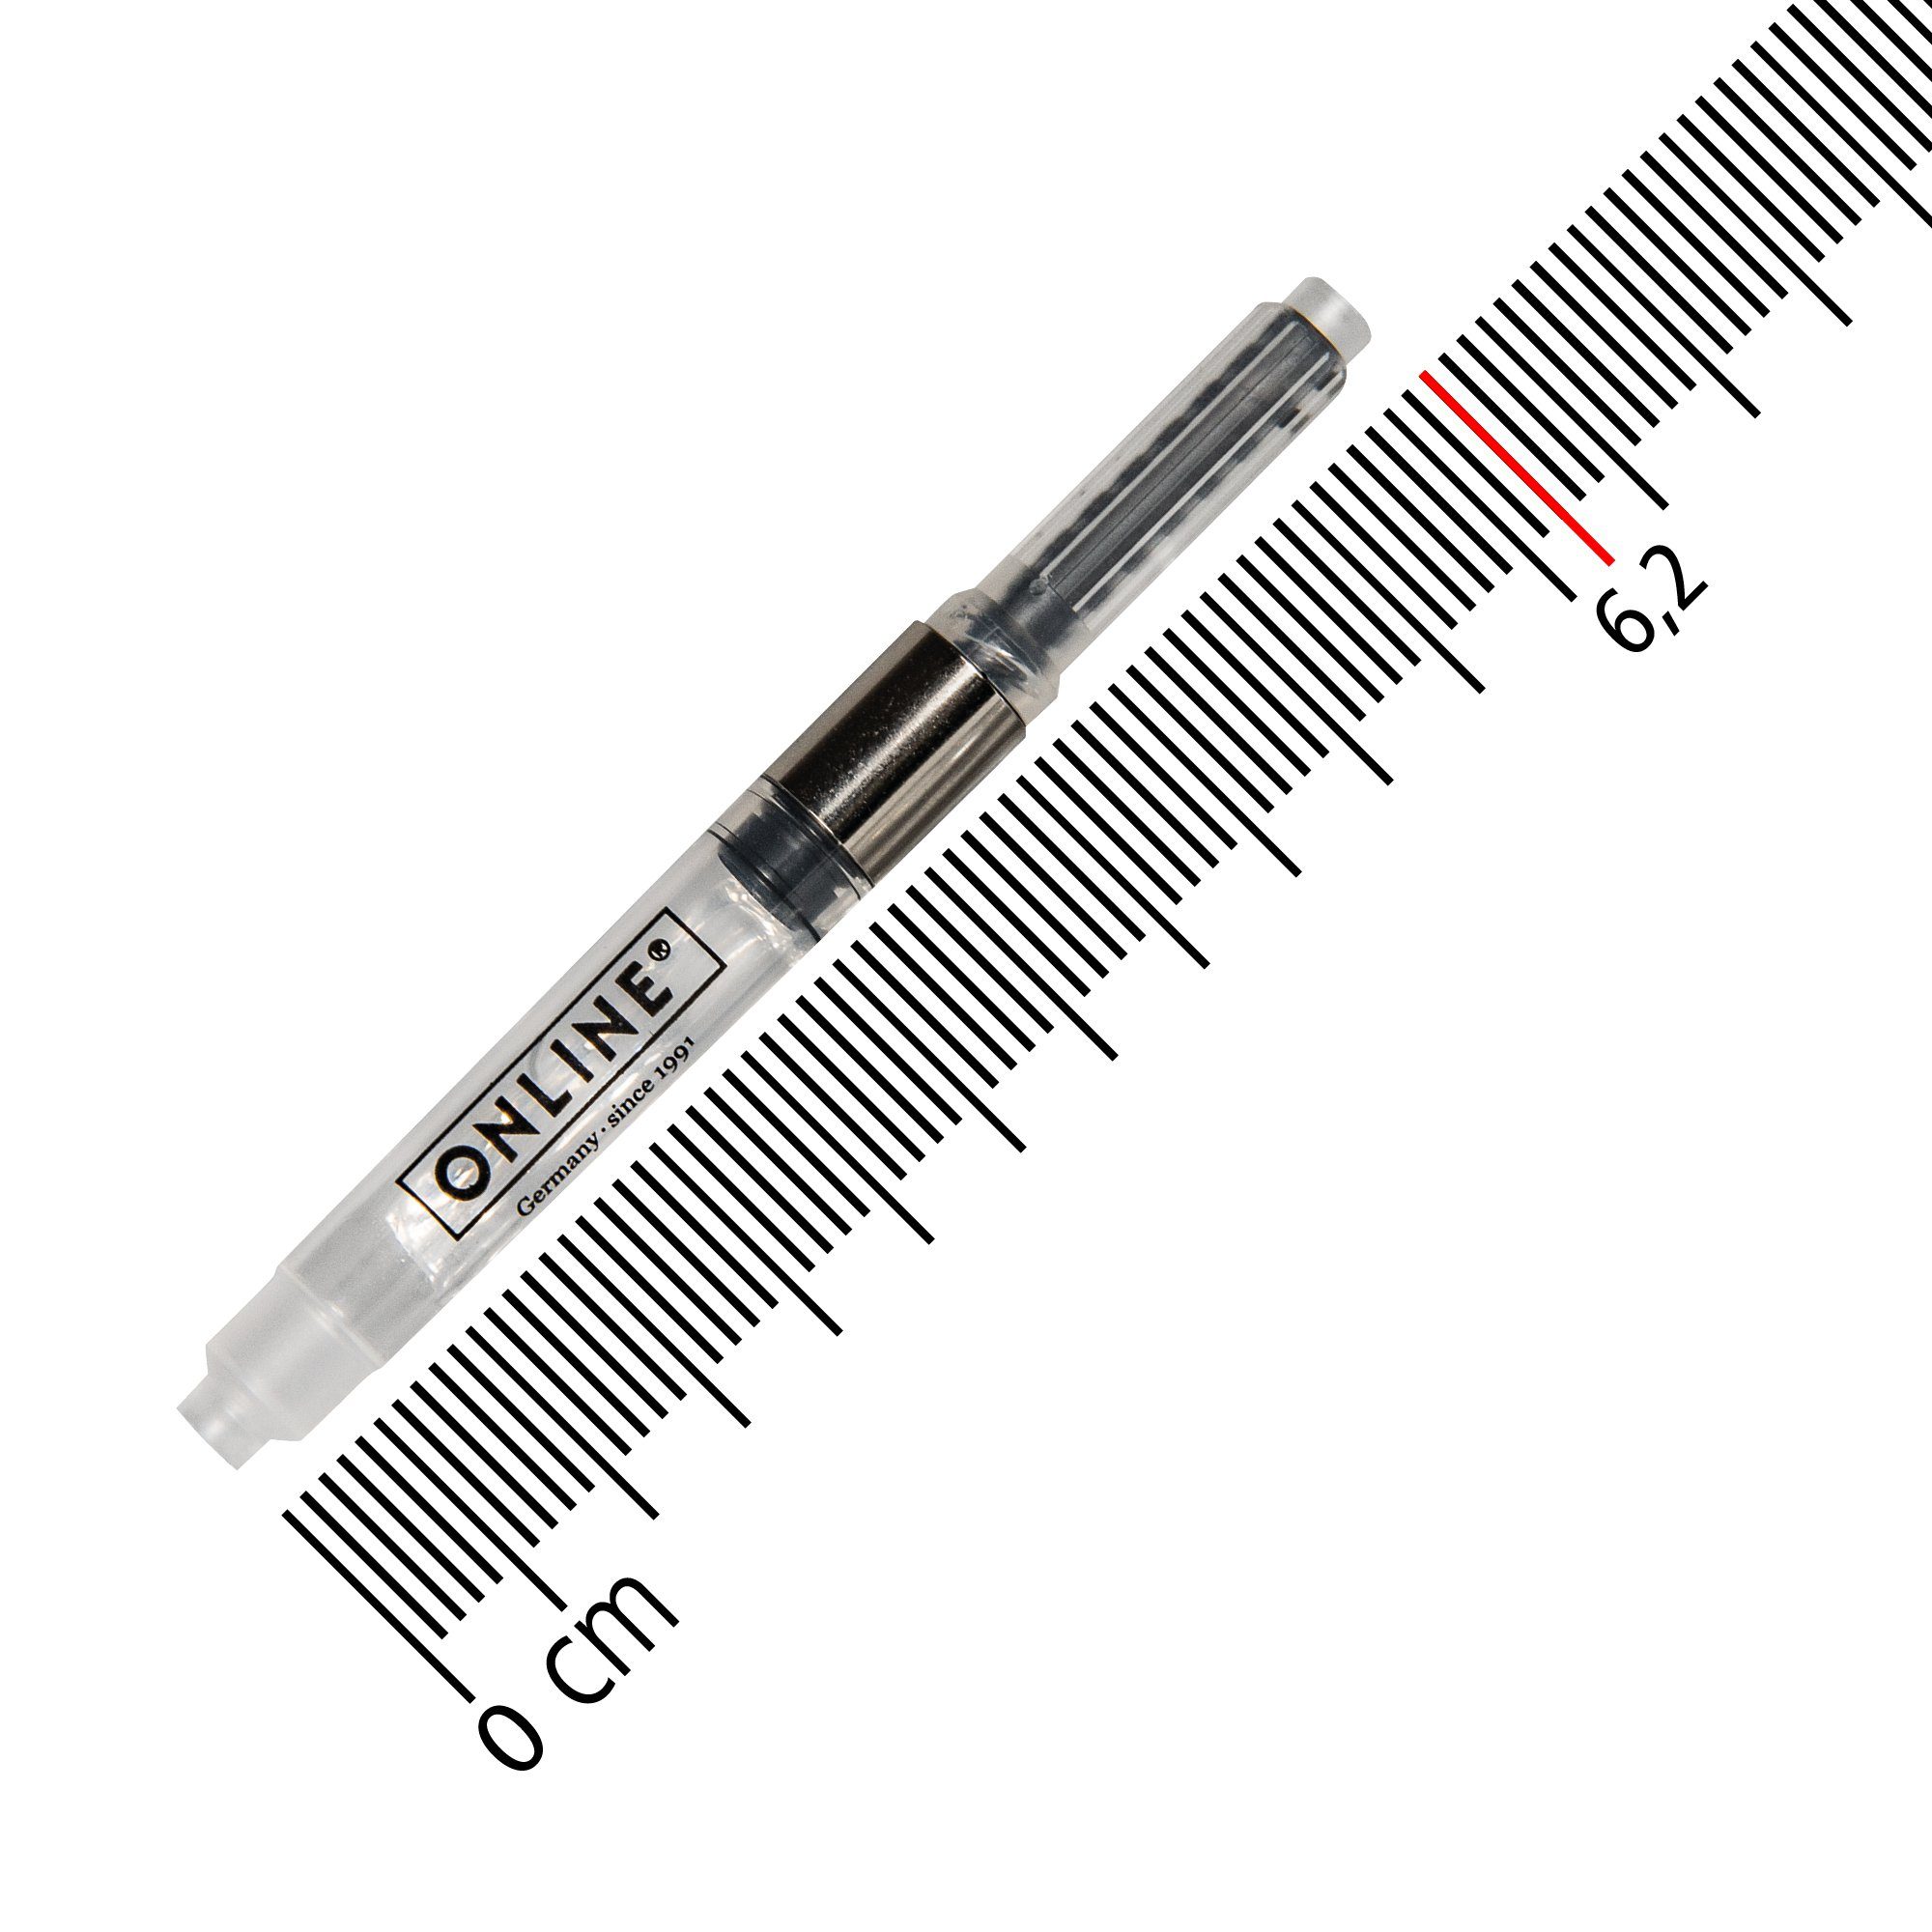 Tinten-Konverter, Füller in (1-tlg), Pen Online Deutschland hergestellt